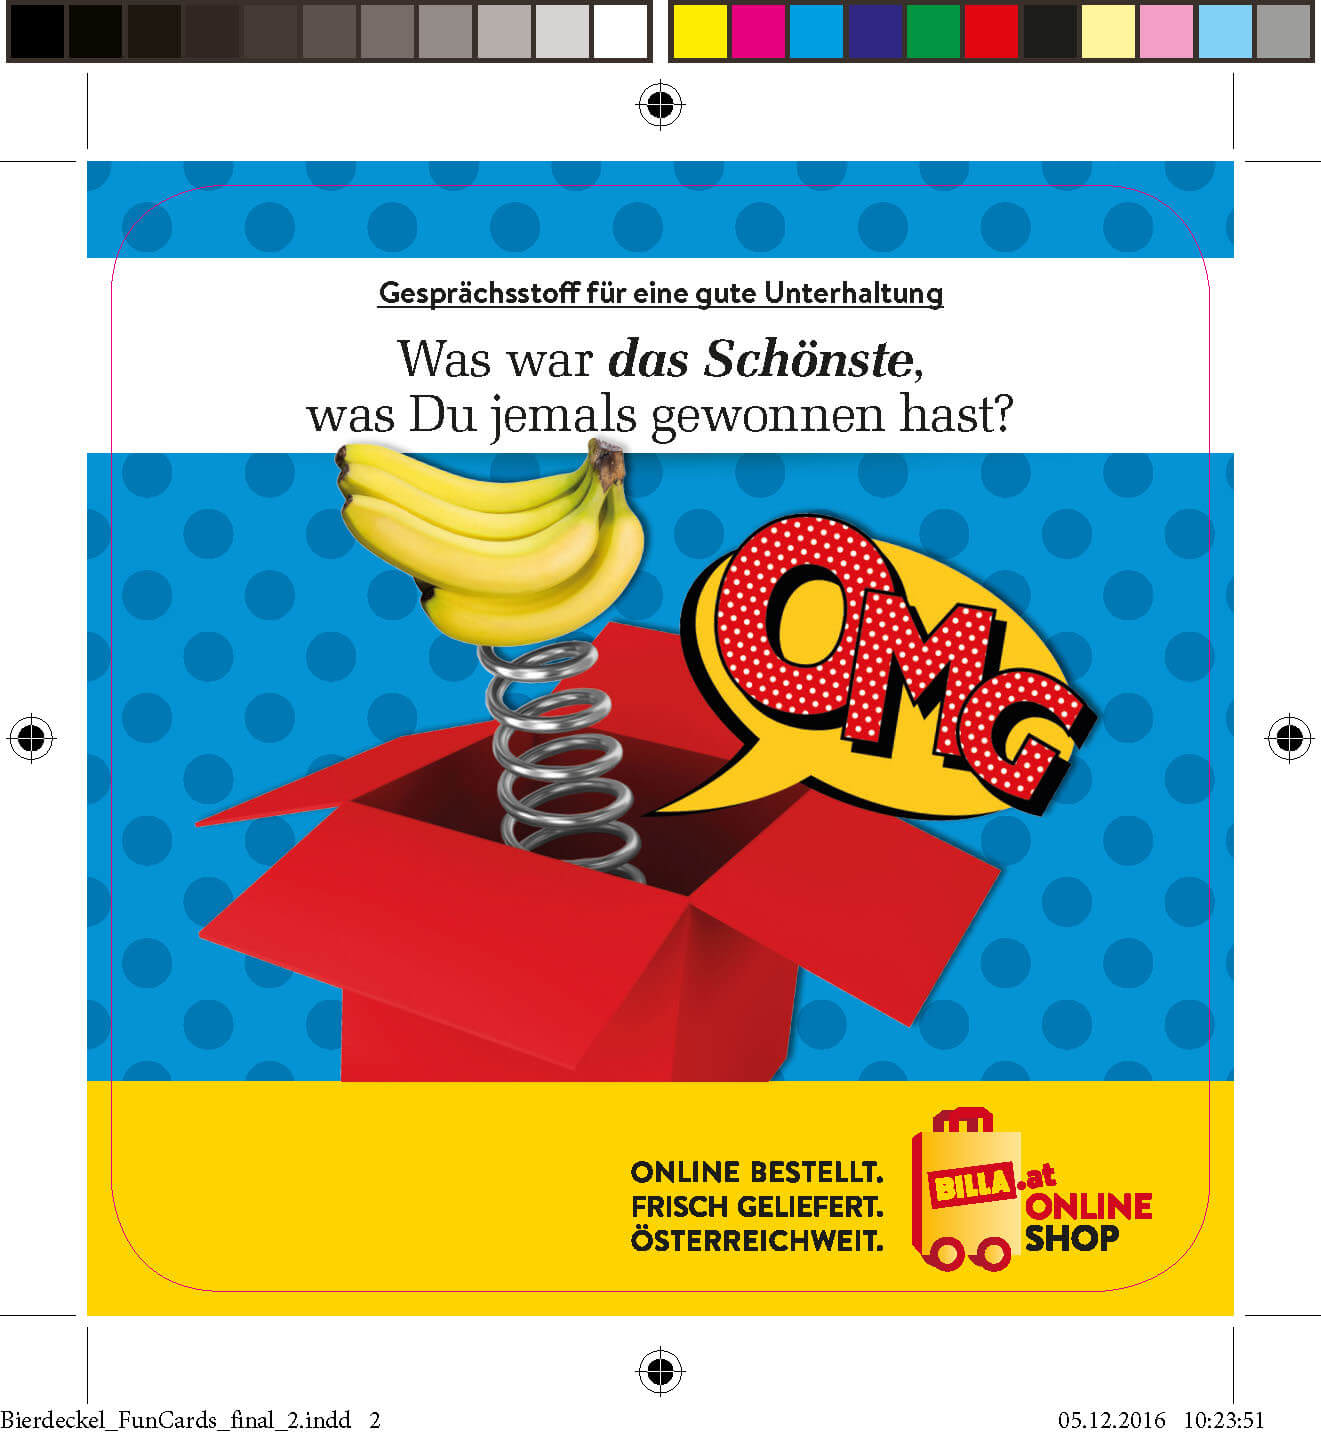 Bierdeckel der Firma BILLA Online Shop für die Veranstaltung "Wiener Wiesn" mit dem Spruch "Was war das Schönste, was Du jemals gewonnen hast?"